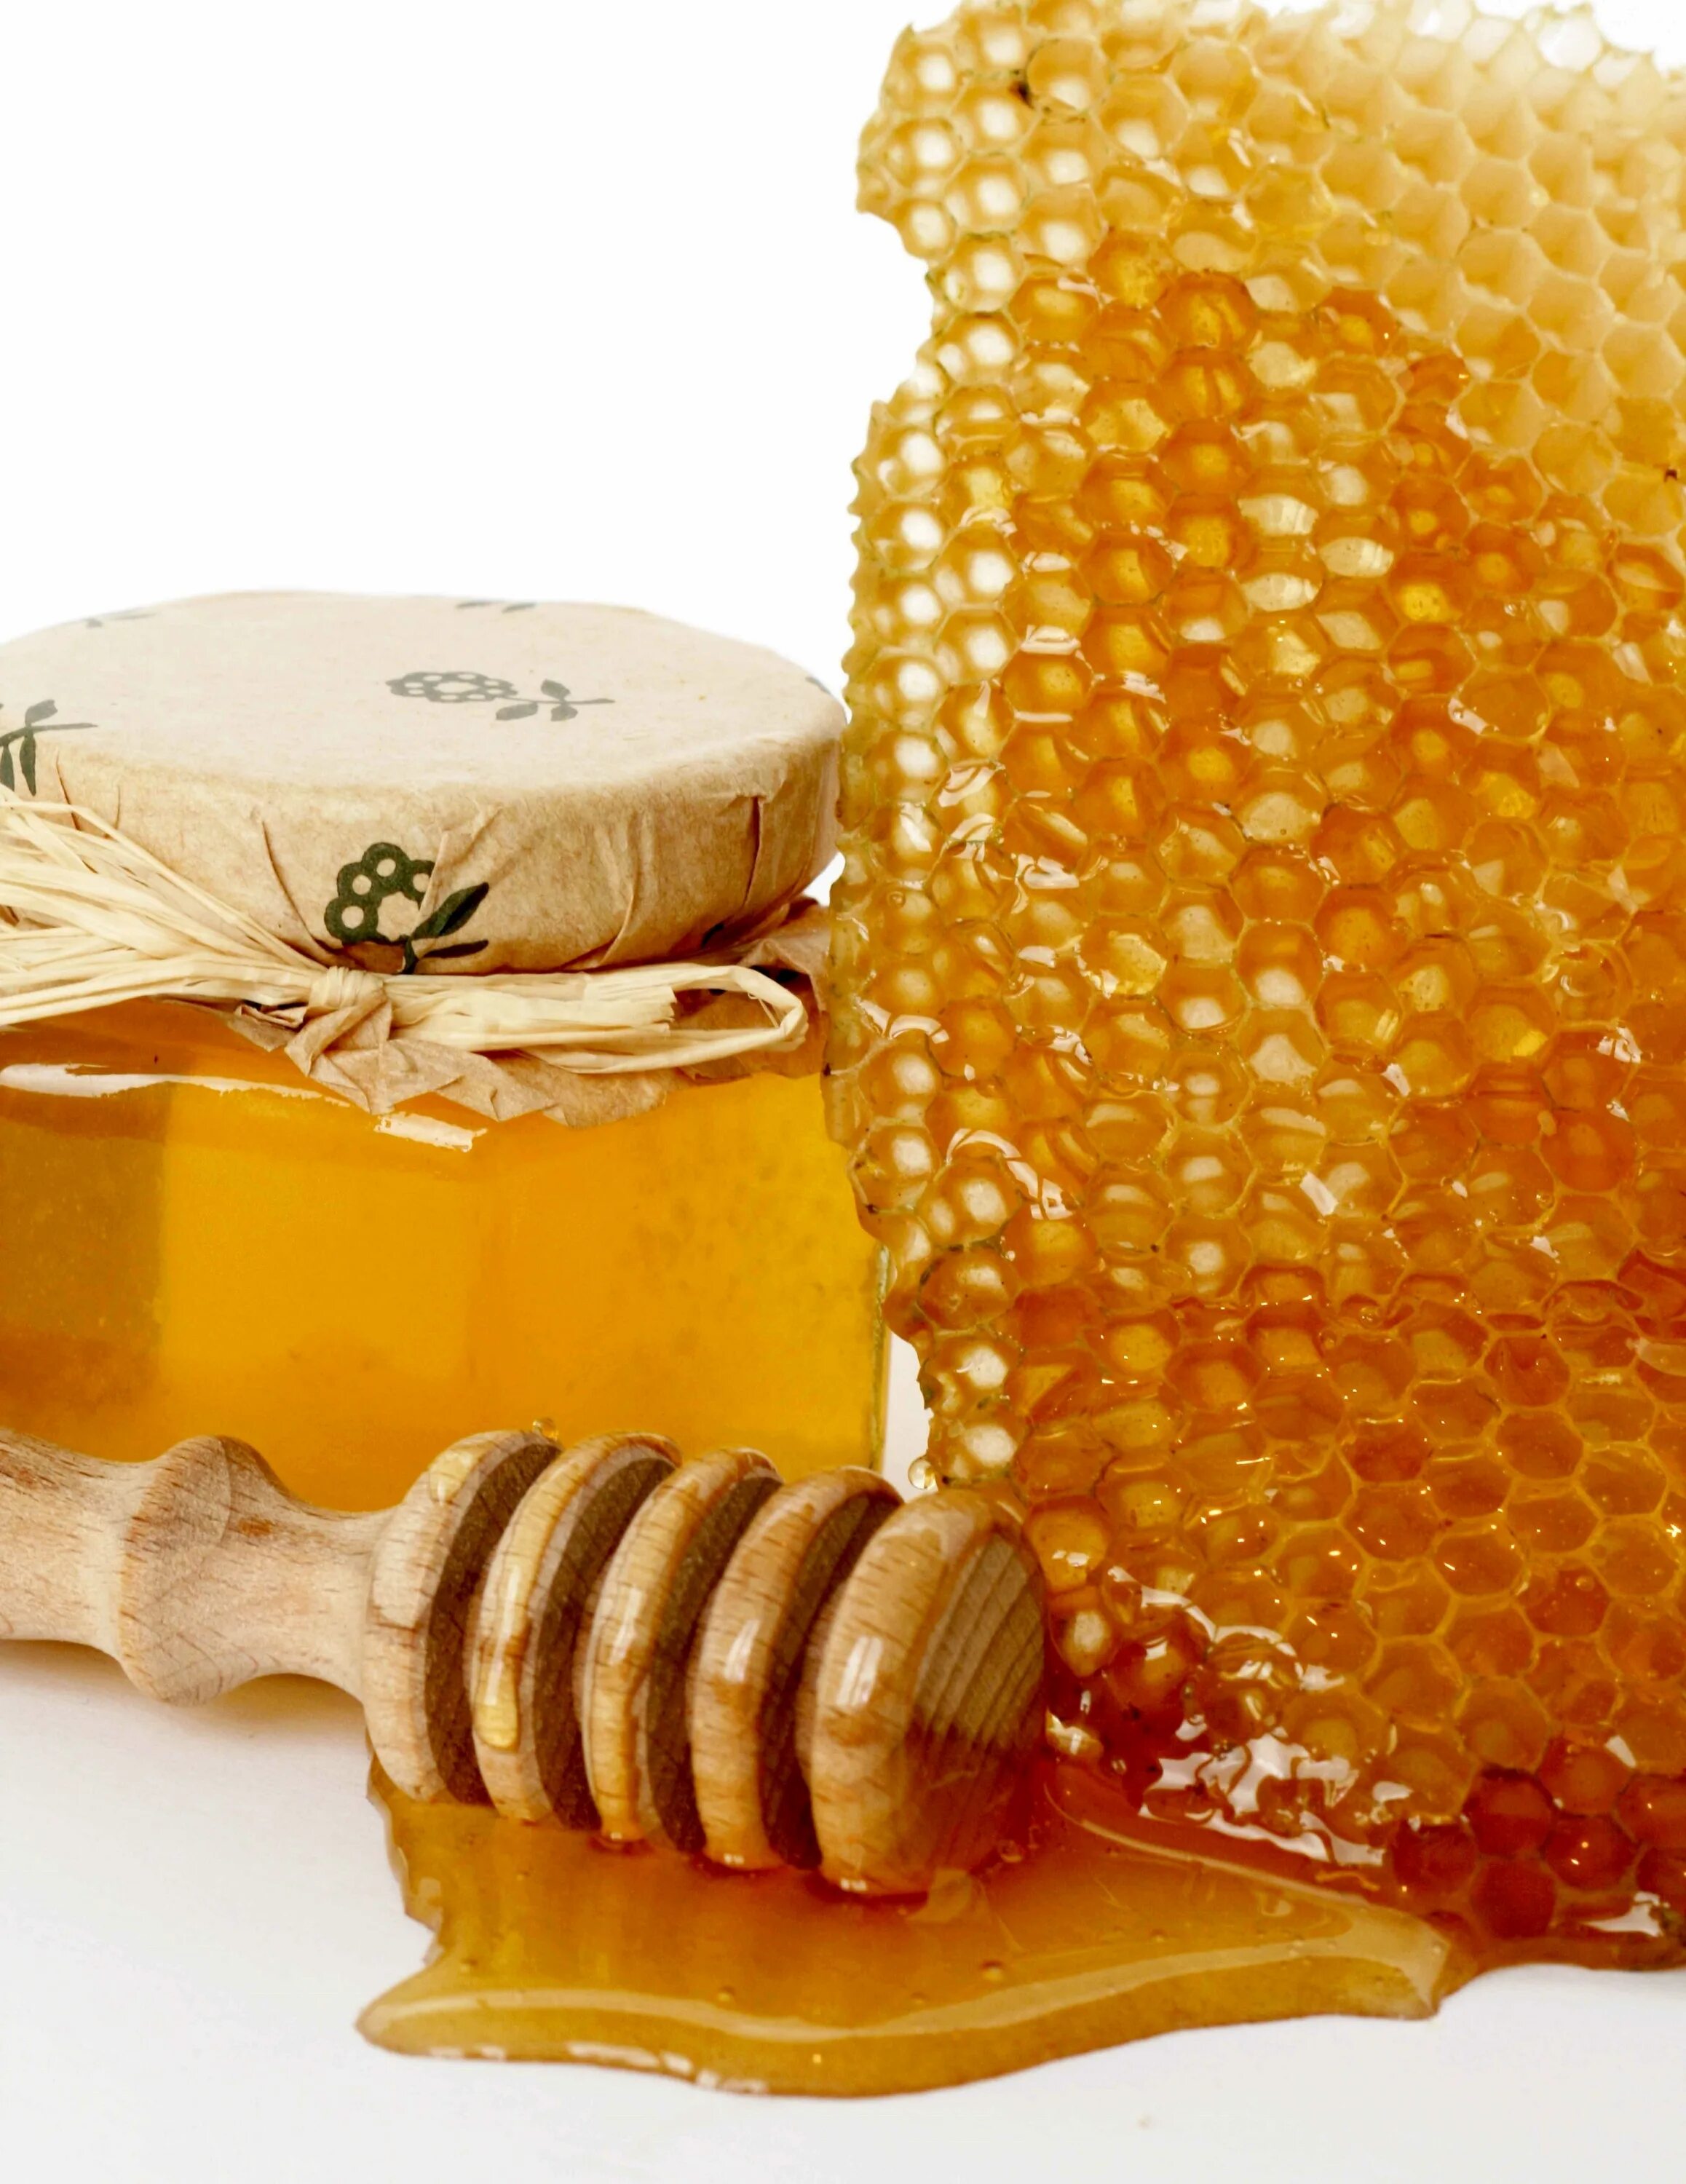 Honey медовый. Мед. Мёд и продукты пчеловодства. Мёд в сотах. Мёд цветочный.